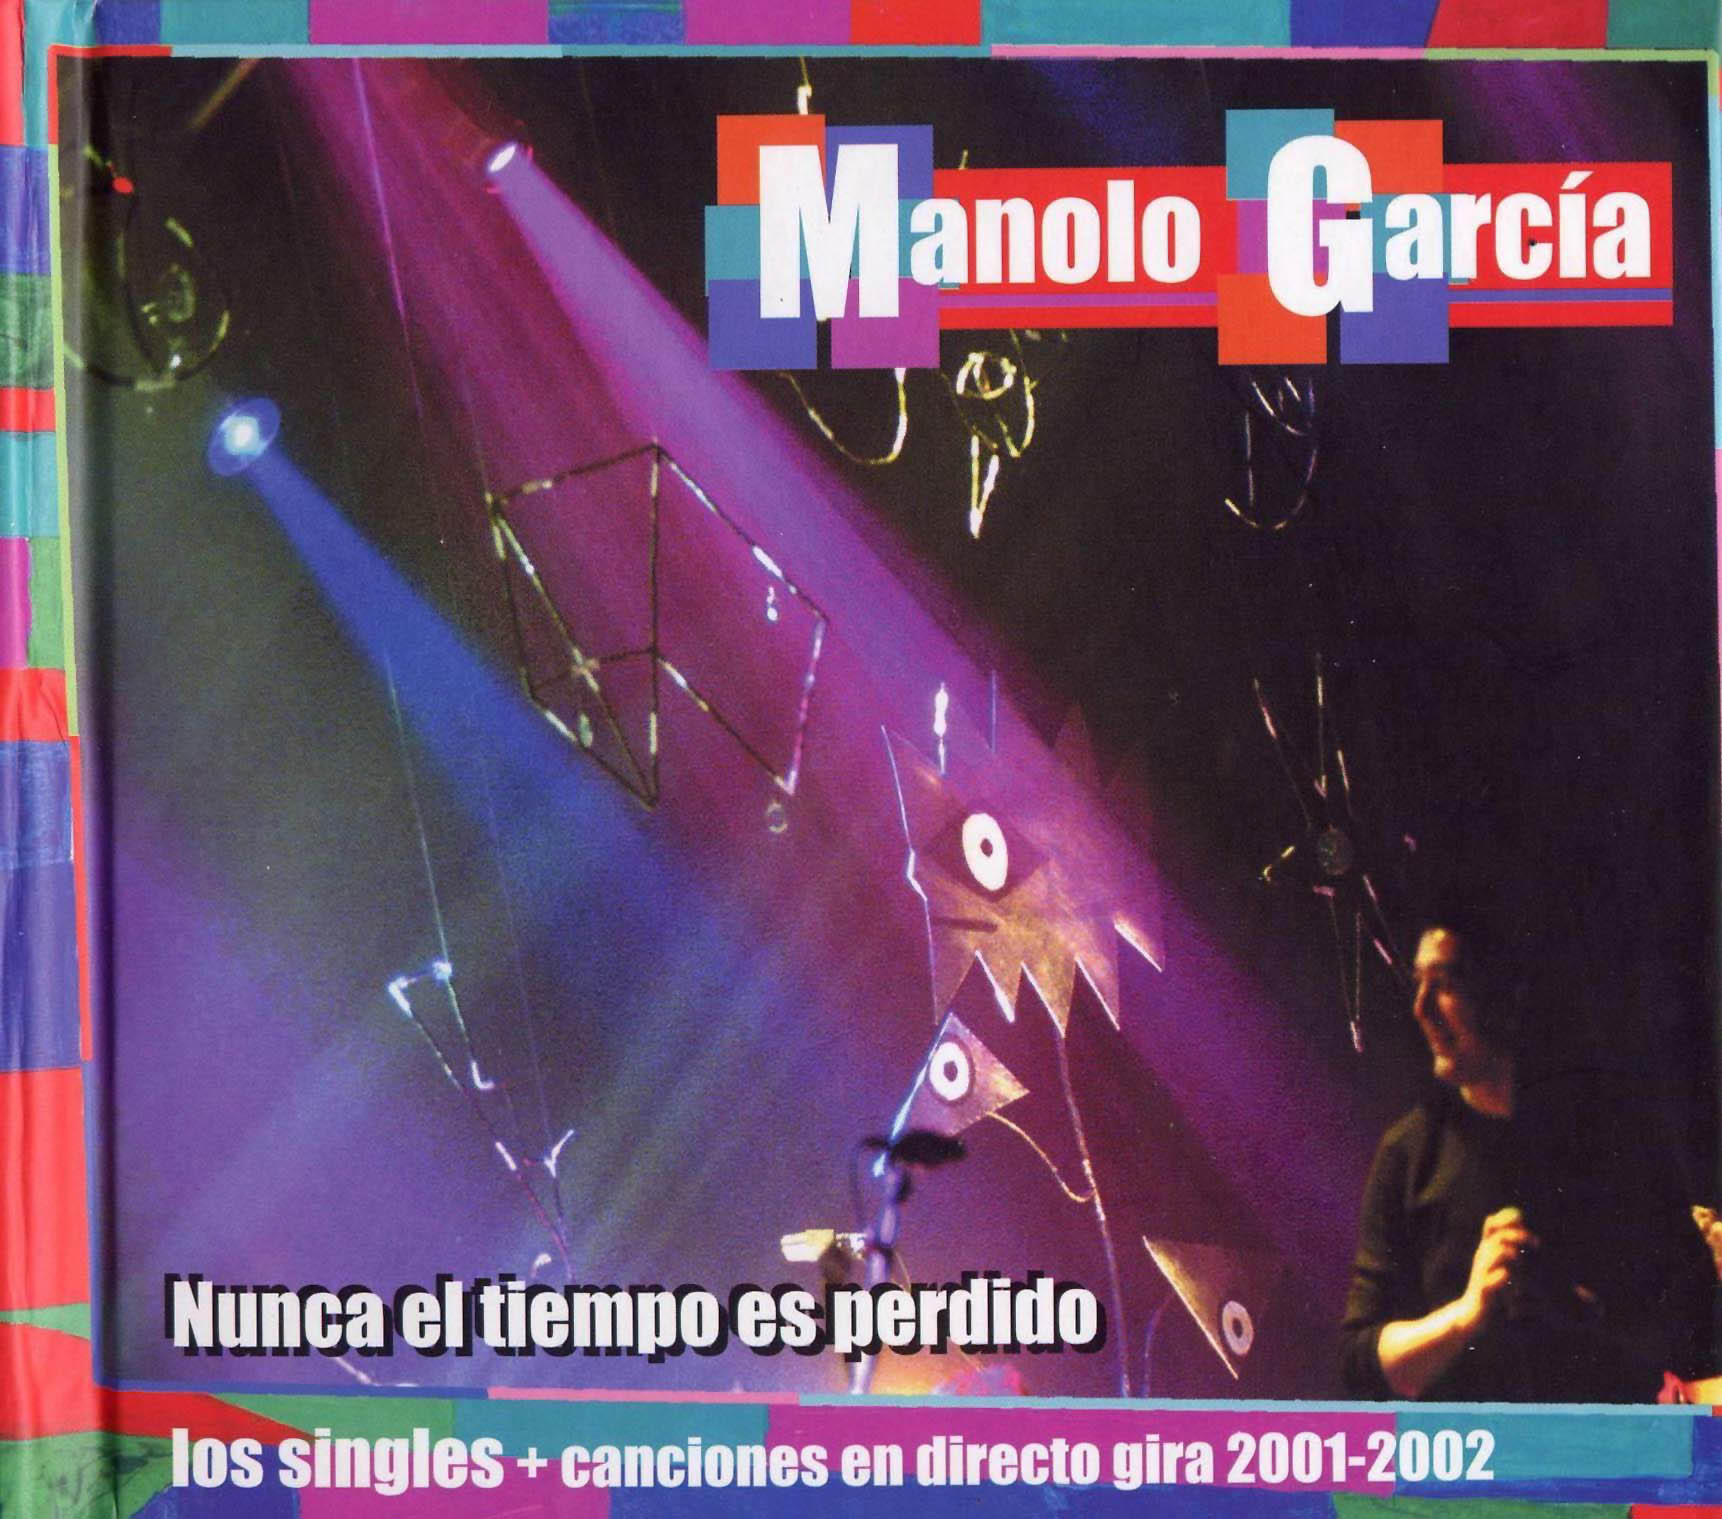 Cartula Frontal de Manolo Garcia - Nunca El Tiempo Es Perdido (Los Singles)